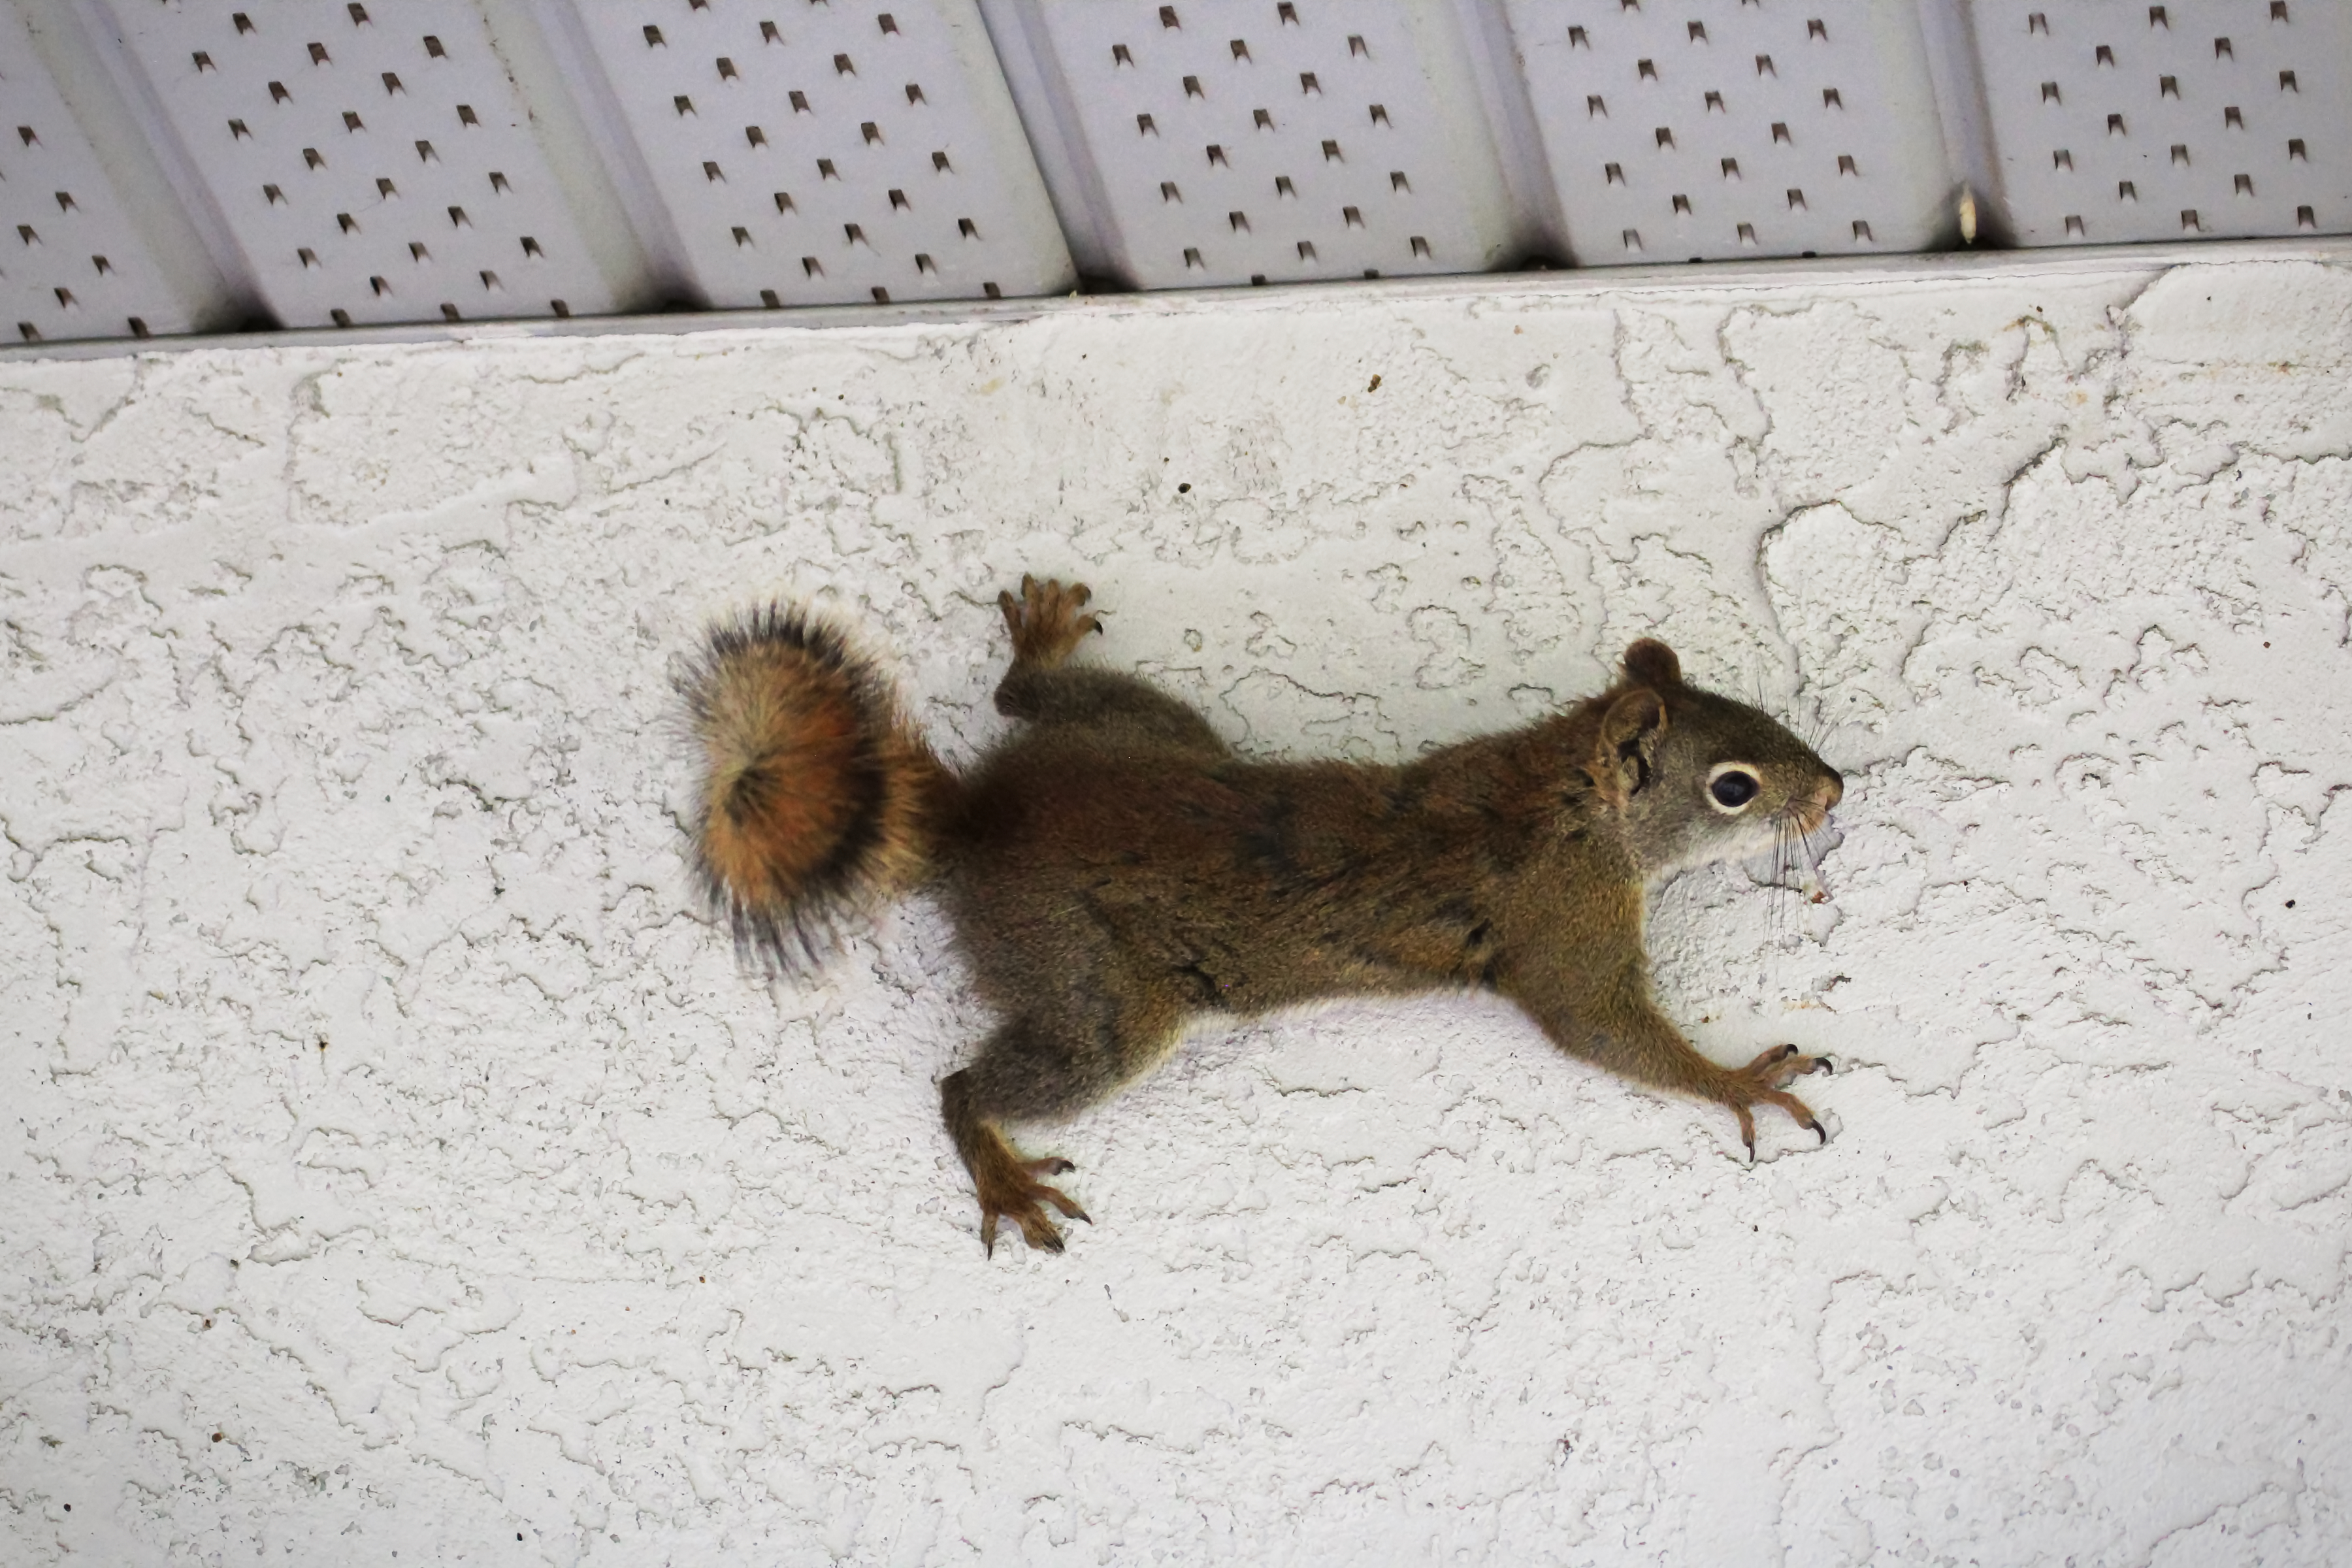 Squirrel Removal, Squirrels in Attic, Damage Repair, Columbia SC